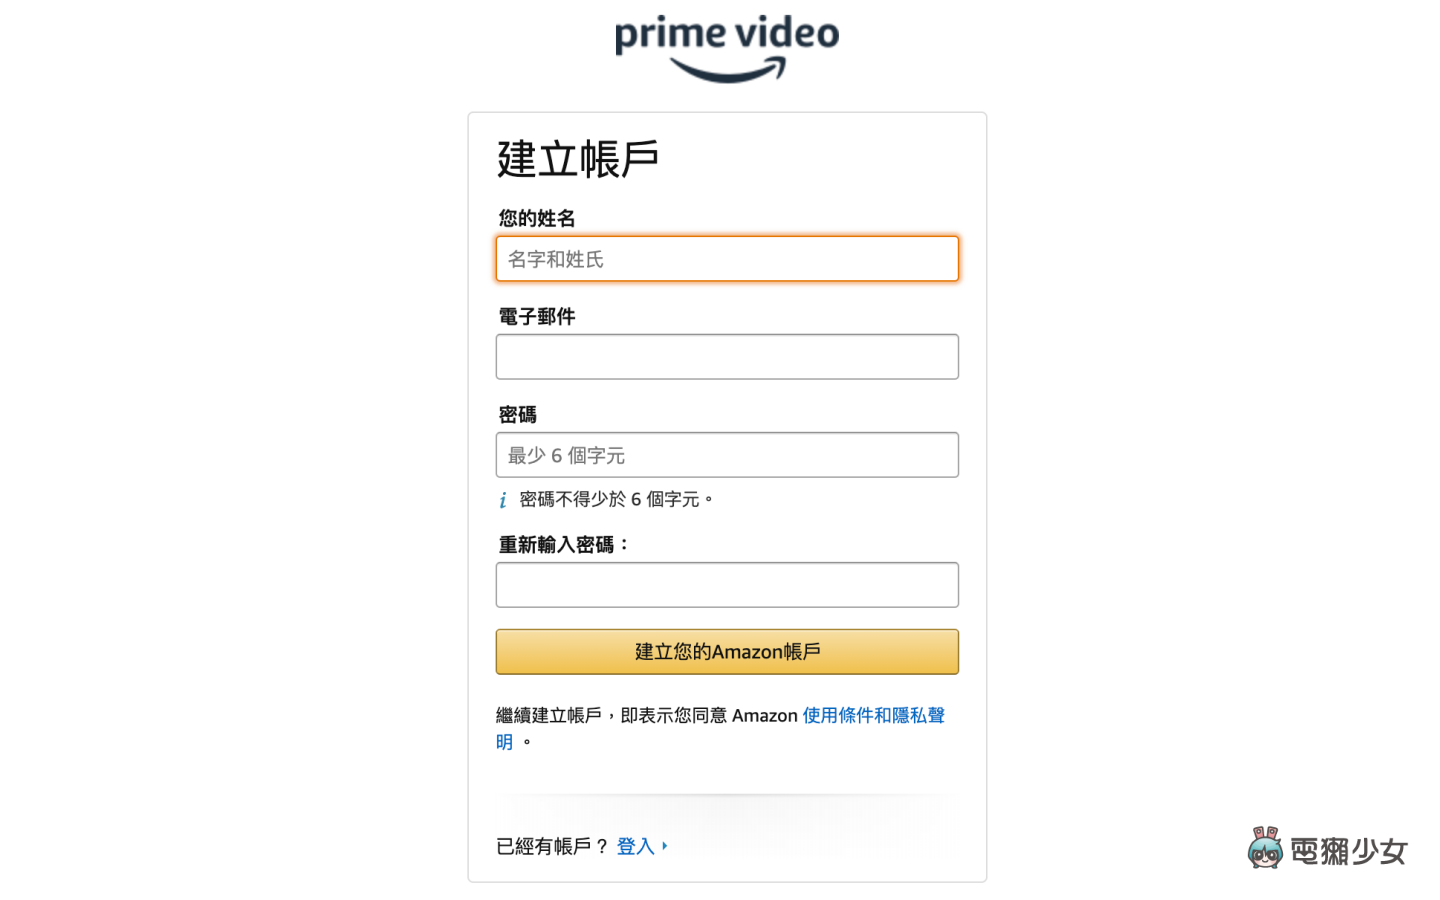 七天免費試看！註冊 Prime Video 一個月後還會想續訂嗎？Amazon 原創影劇有哪些好料？